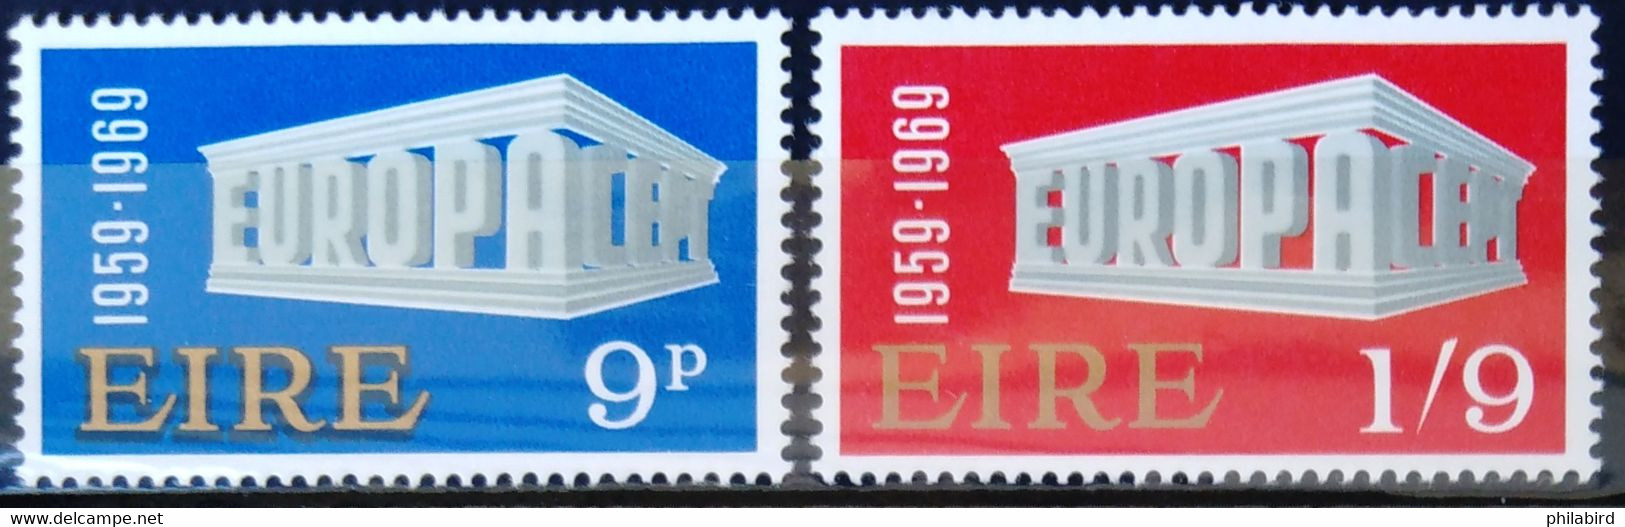 EUROPA 1969 - IRLANDE                  N° 232/233                     NEUF* - 1969